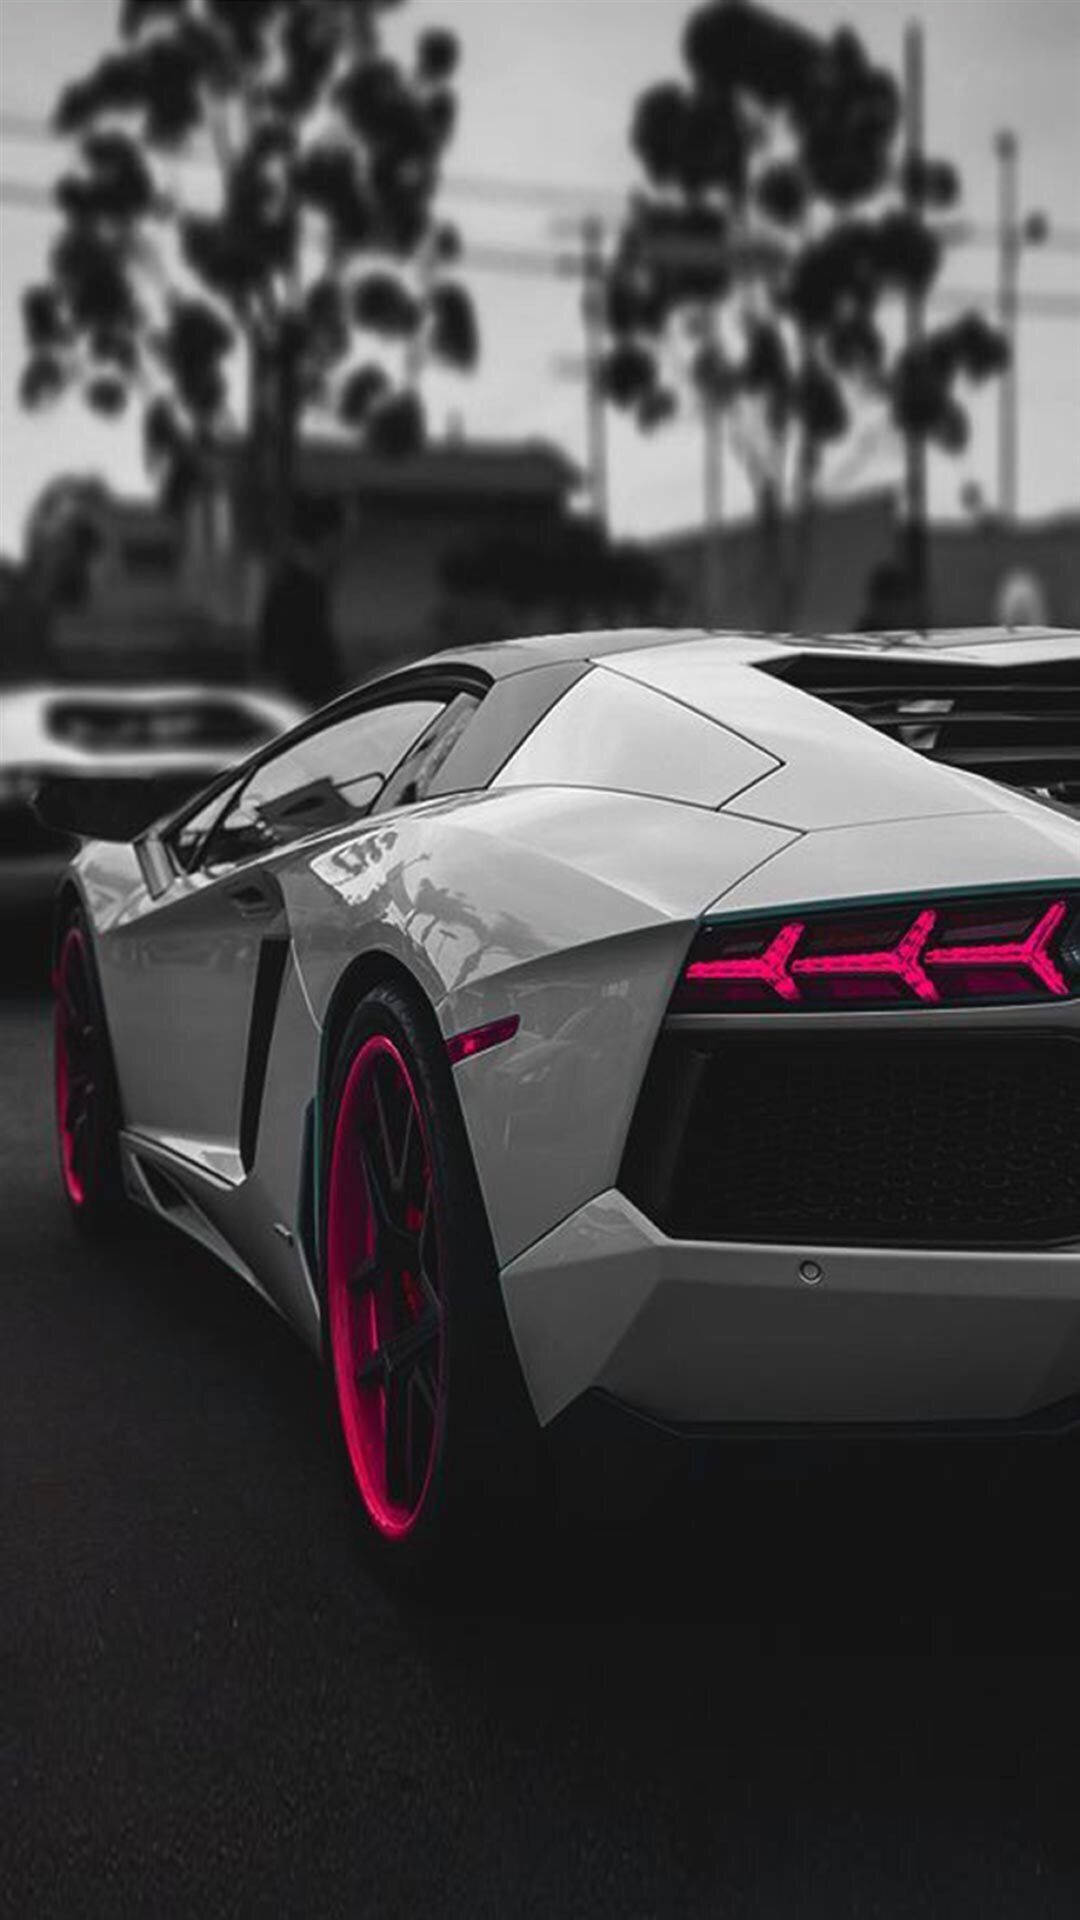 Image For Iphone Lamborghini Lock Screen Wallpaper